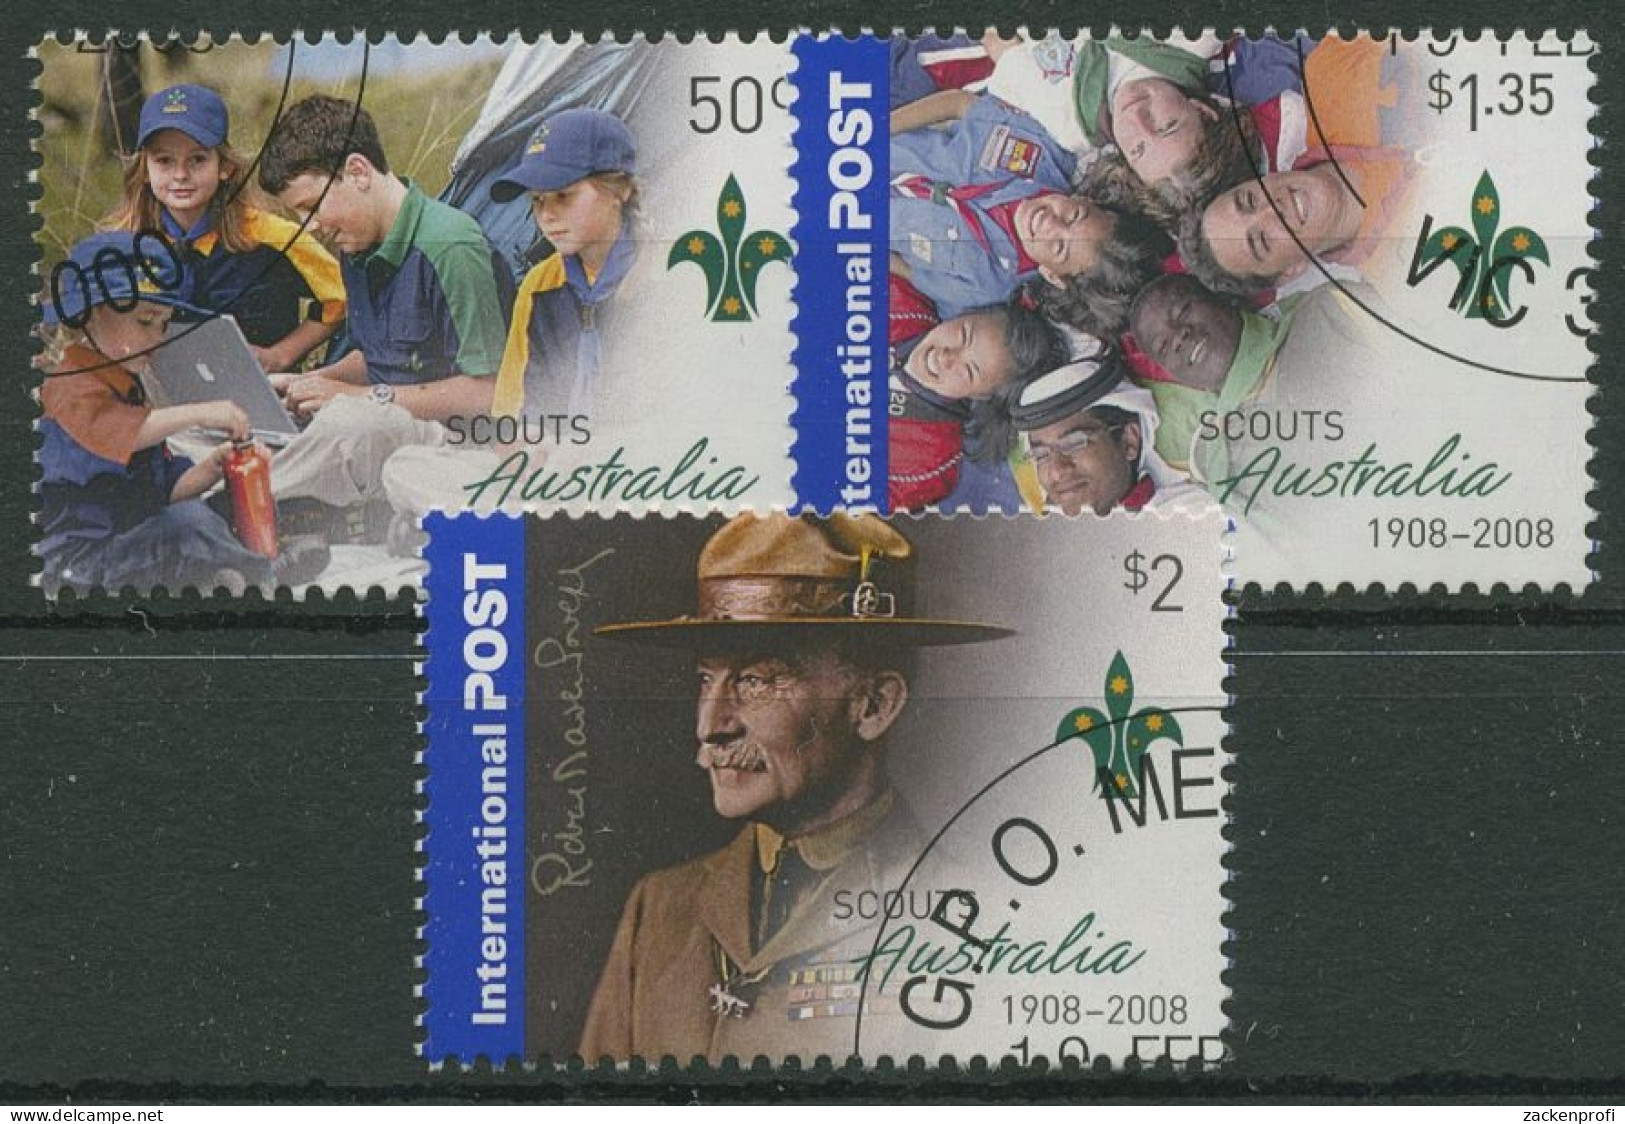 Australien 2008 100 Jahre Pfadfinderbewegung In Australien 2929/31 Gestempelt - Used Stamps